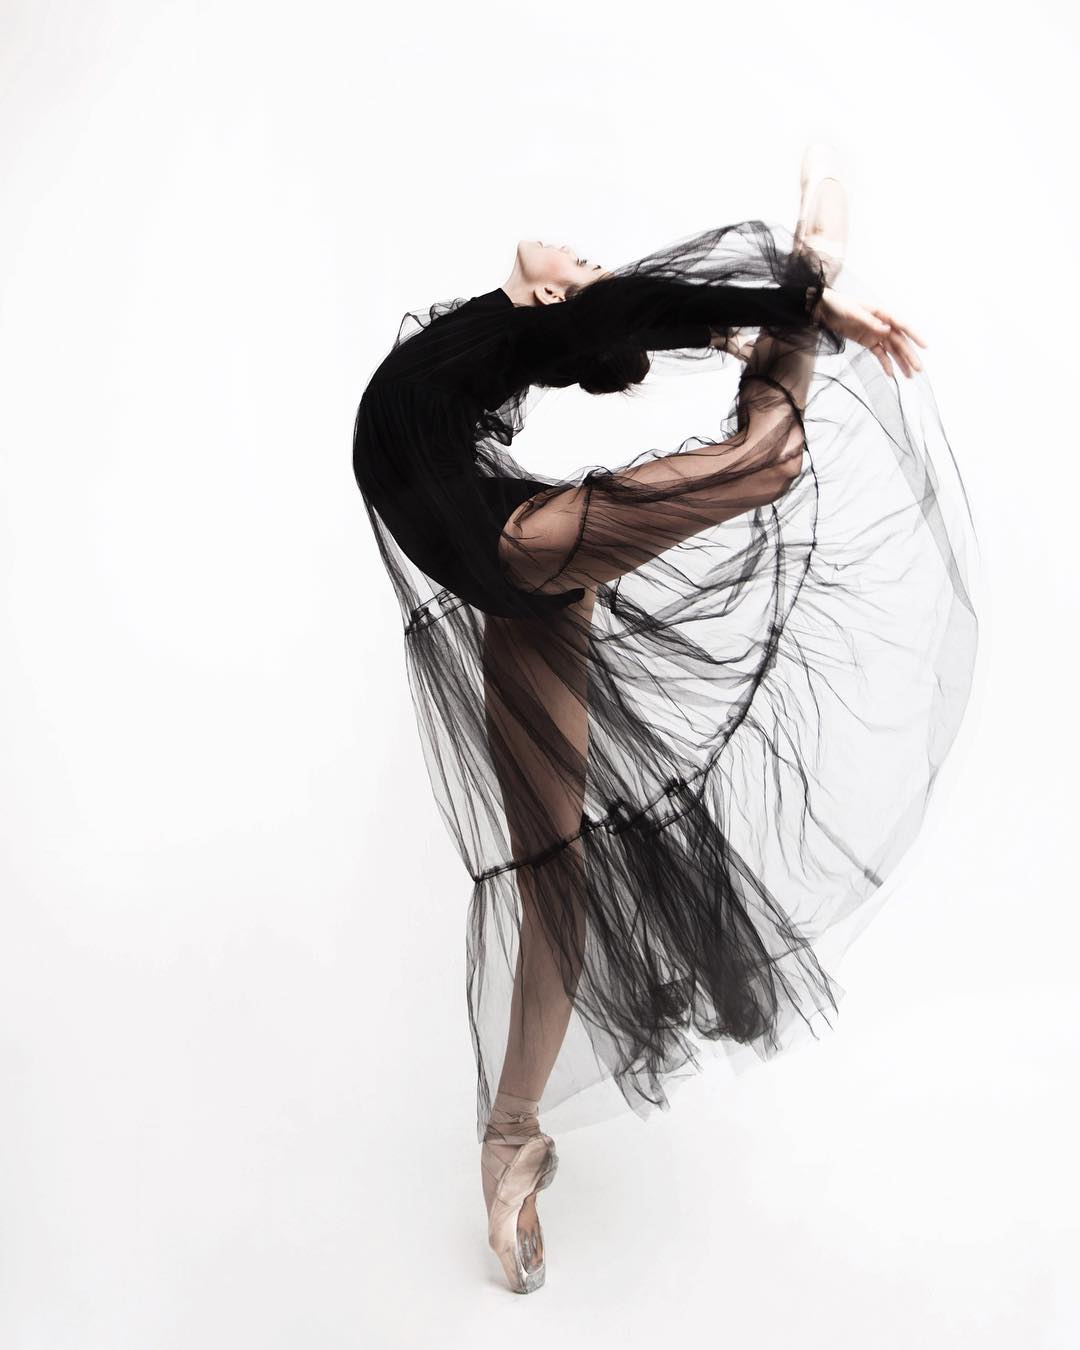 Красивые снимки русских балерин от Ирины Яковлевой